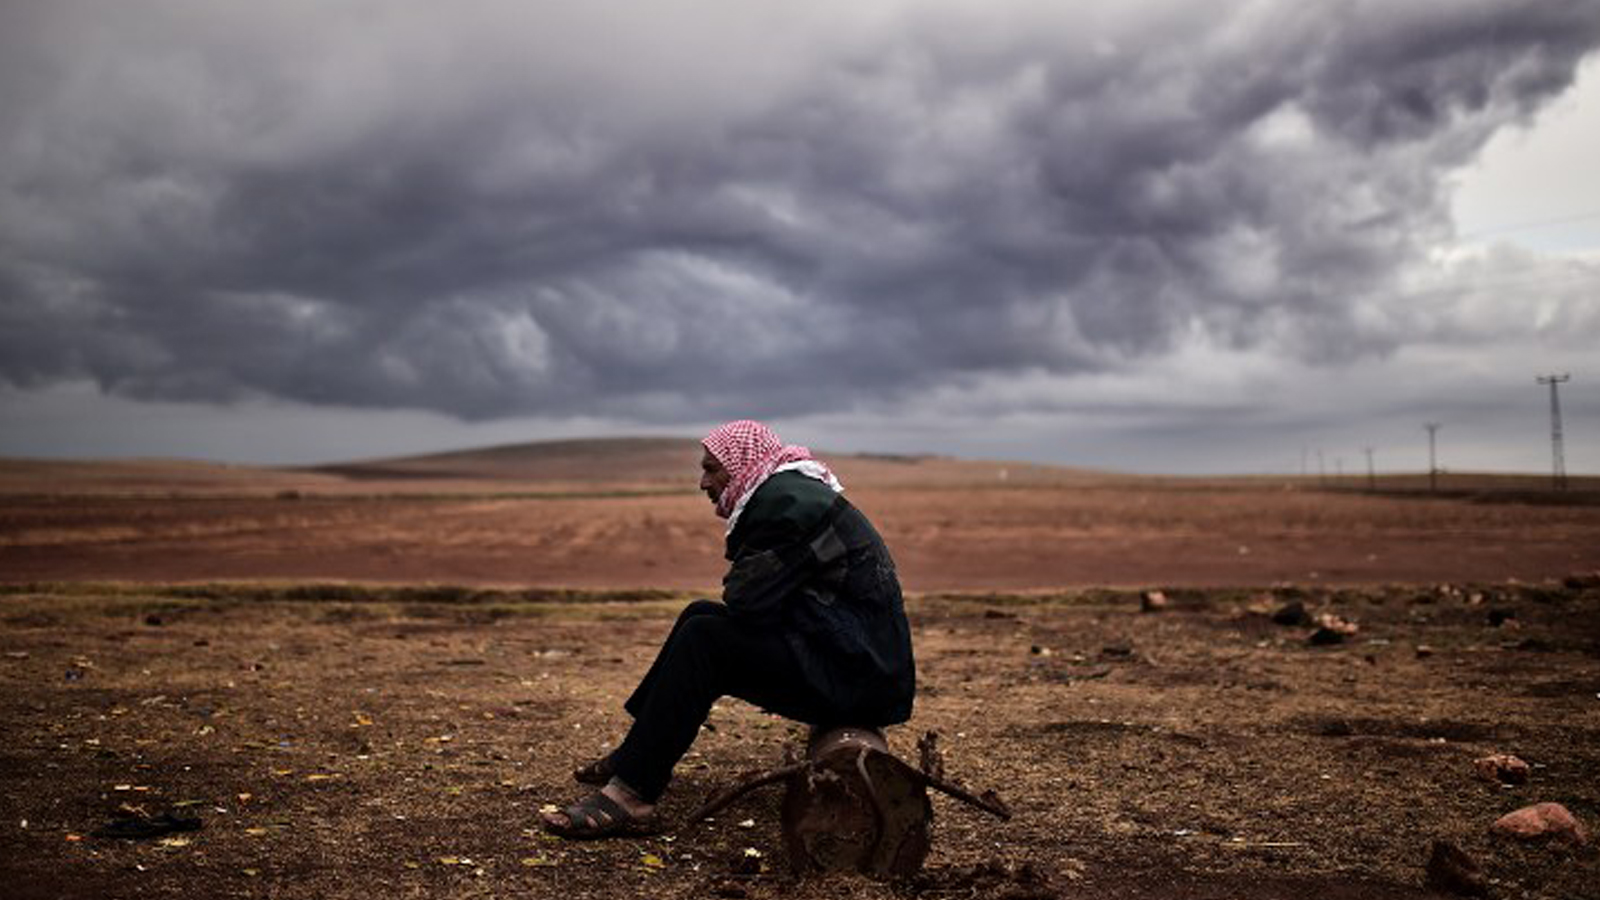 "فورين بوليسي": خطة جديدة لانقاذ نظام الاسد